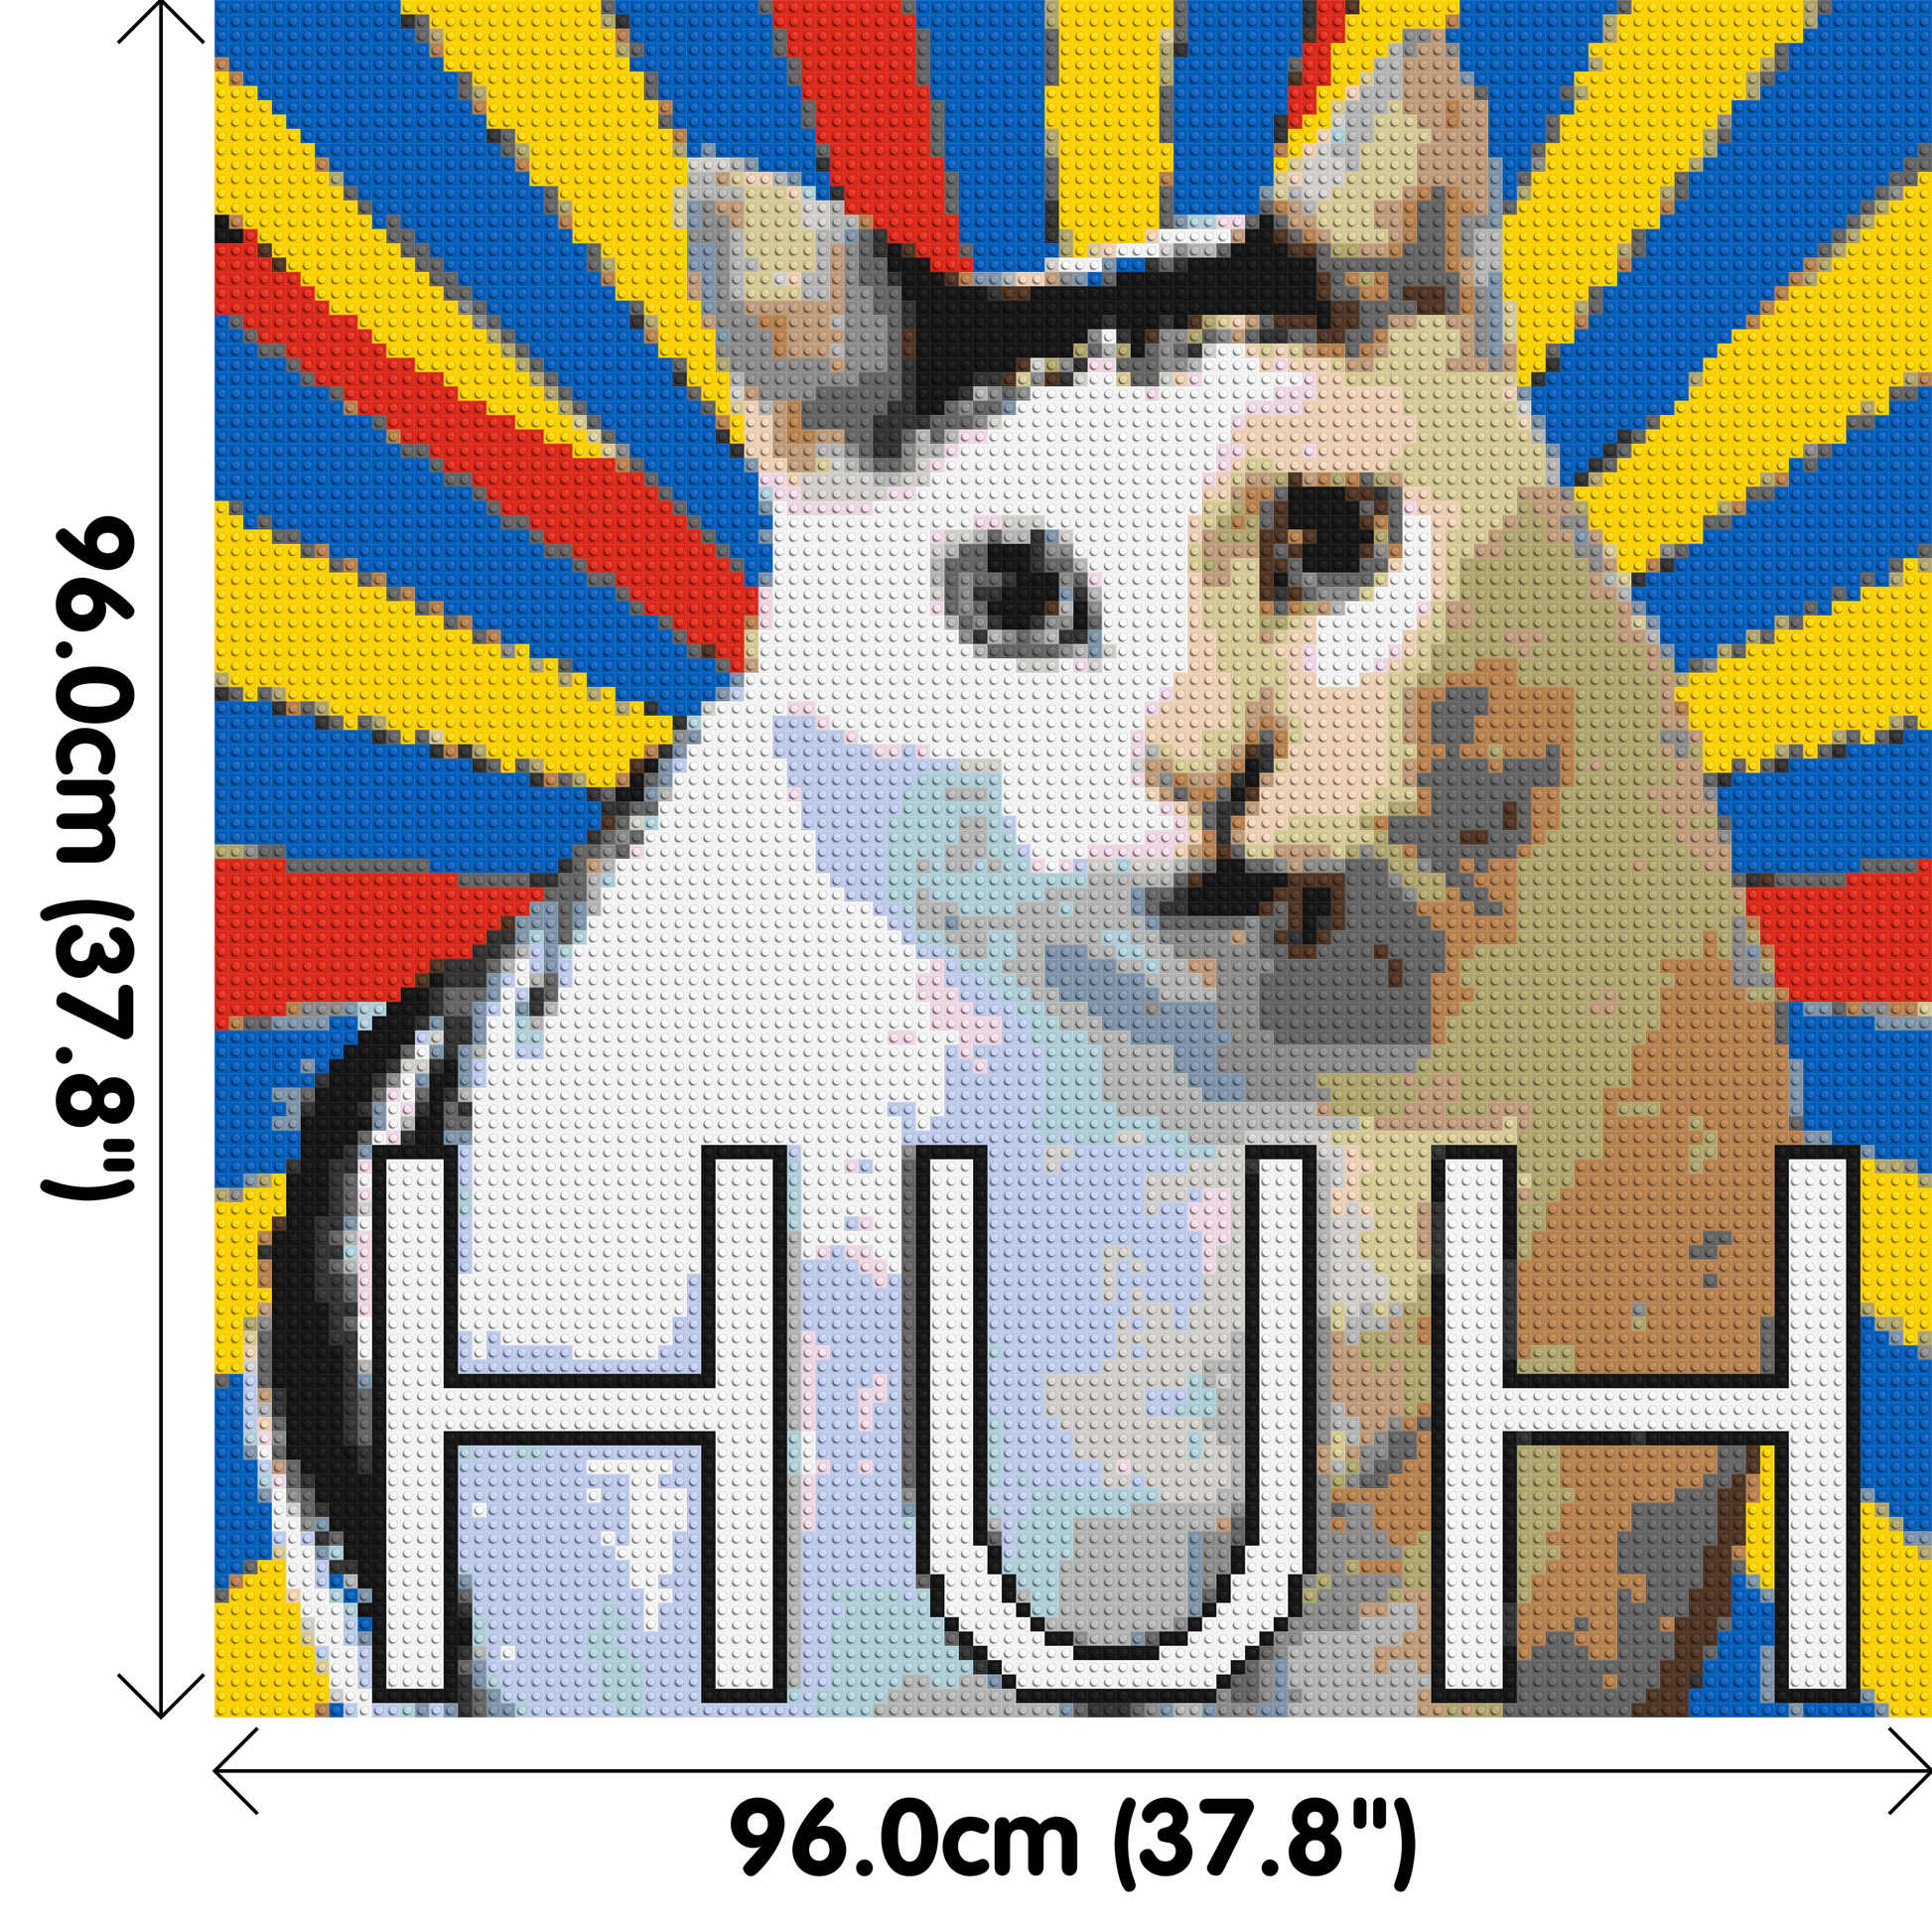 Huh Cat Meme - Brick Art Mosaic Kit 5x5 dimensions